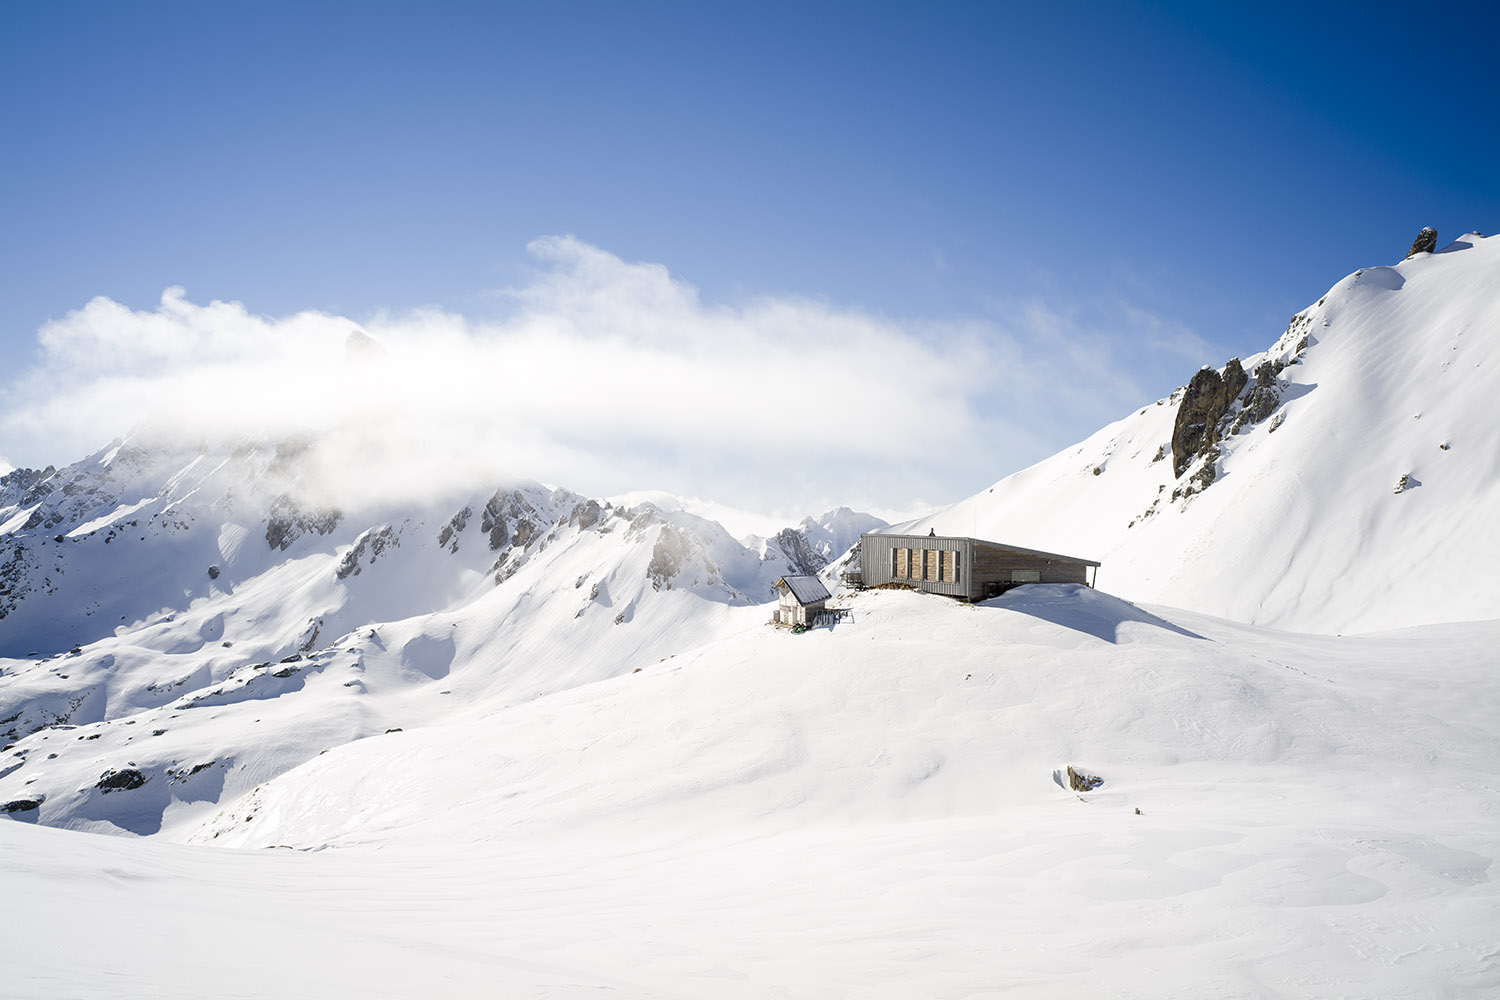 ski touring courses at Presset refuge